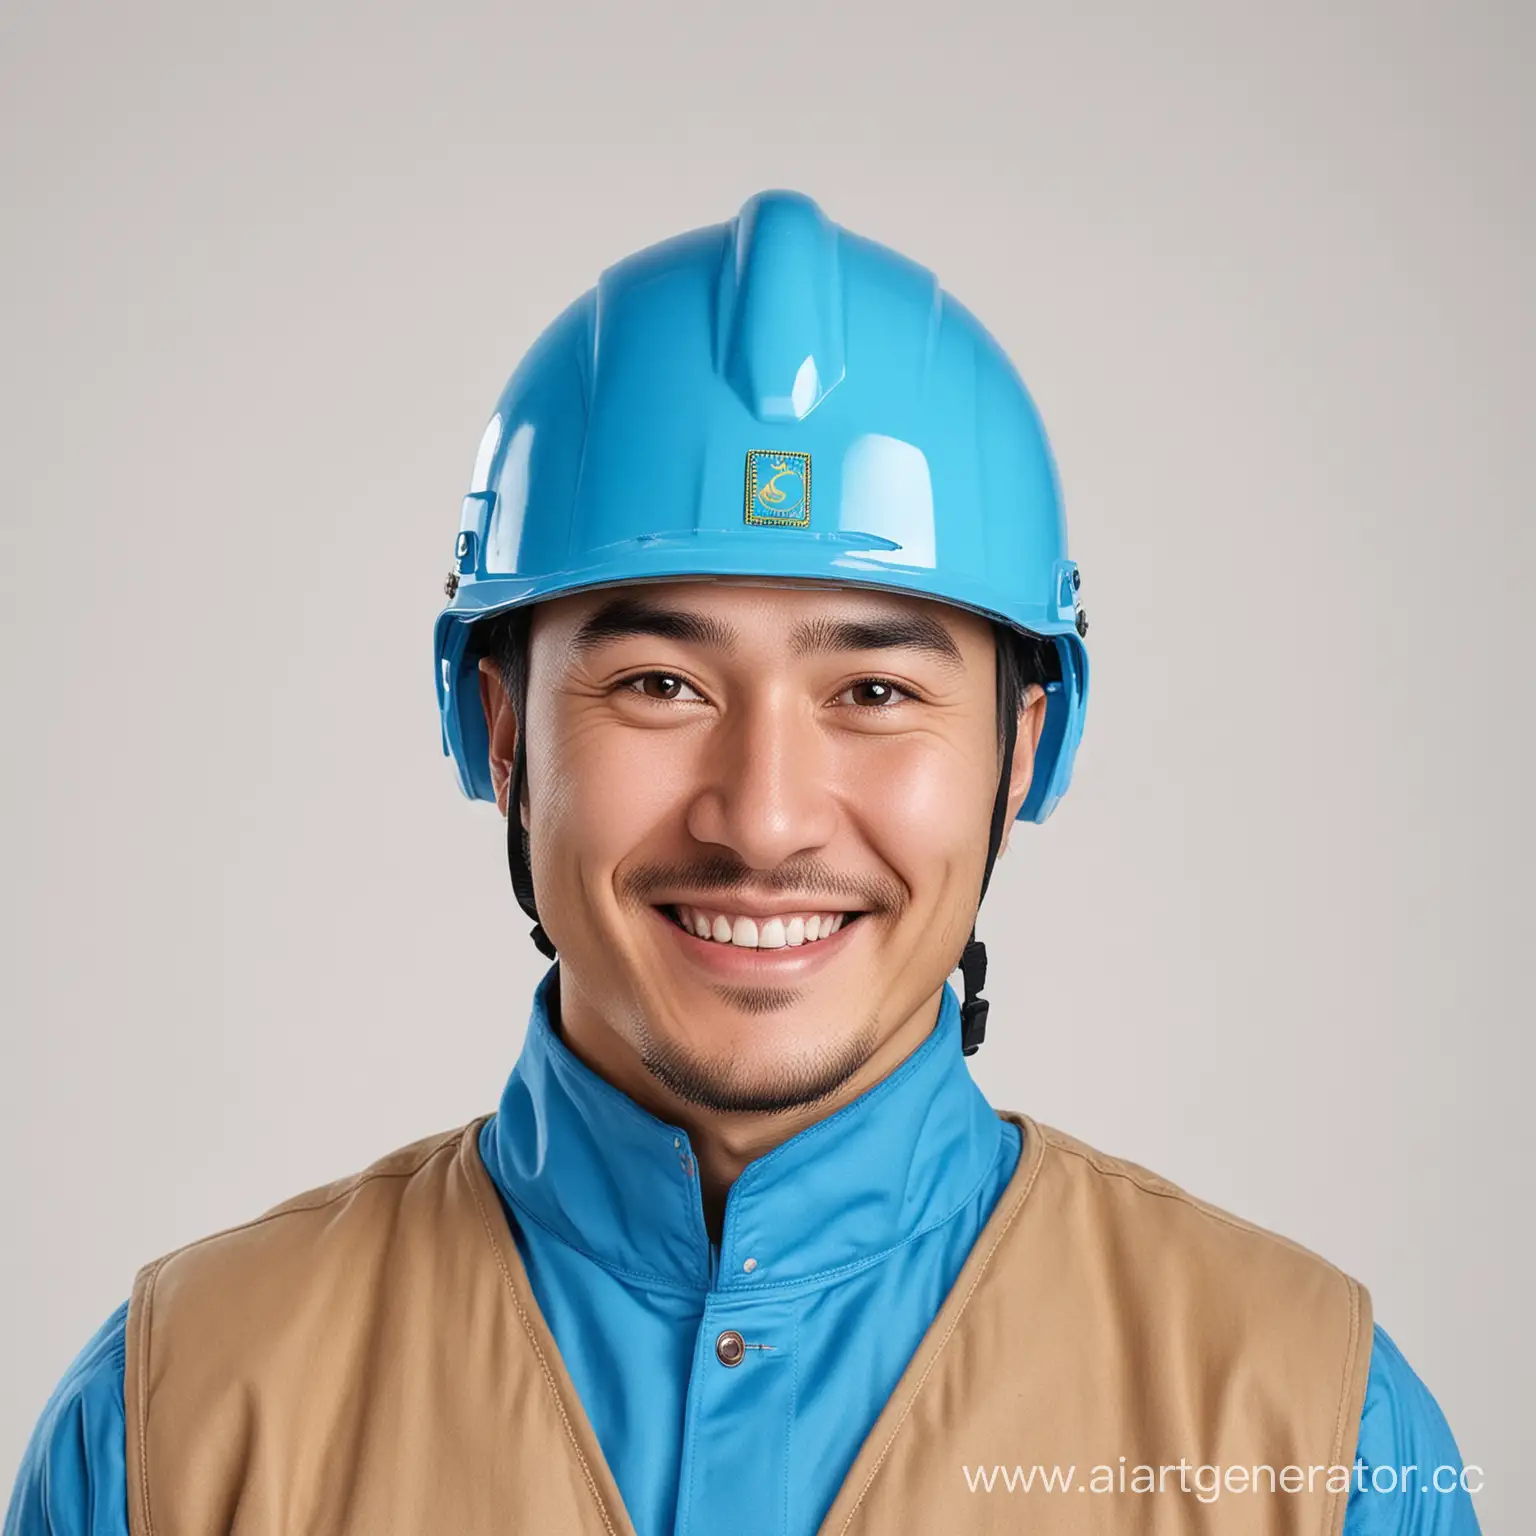 Человек должен выглядеть след. образом, Казахской национальности, в строительной форме, с каской синего цвета на голове.

1 фотография - Он  приветственно улыбается, на белом фоне

